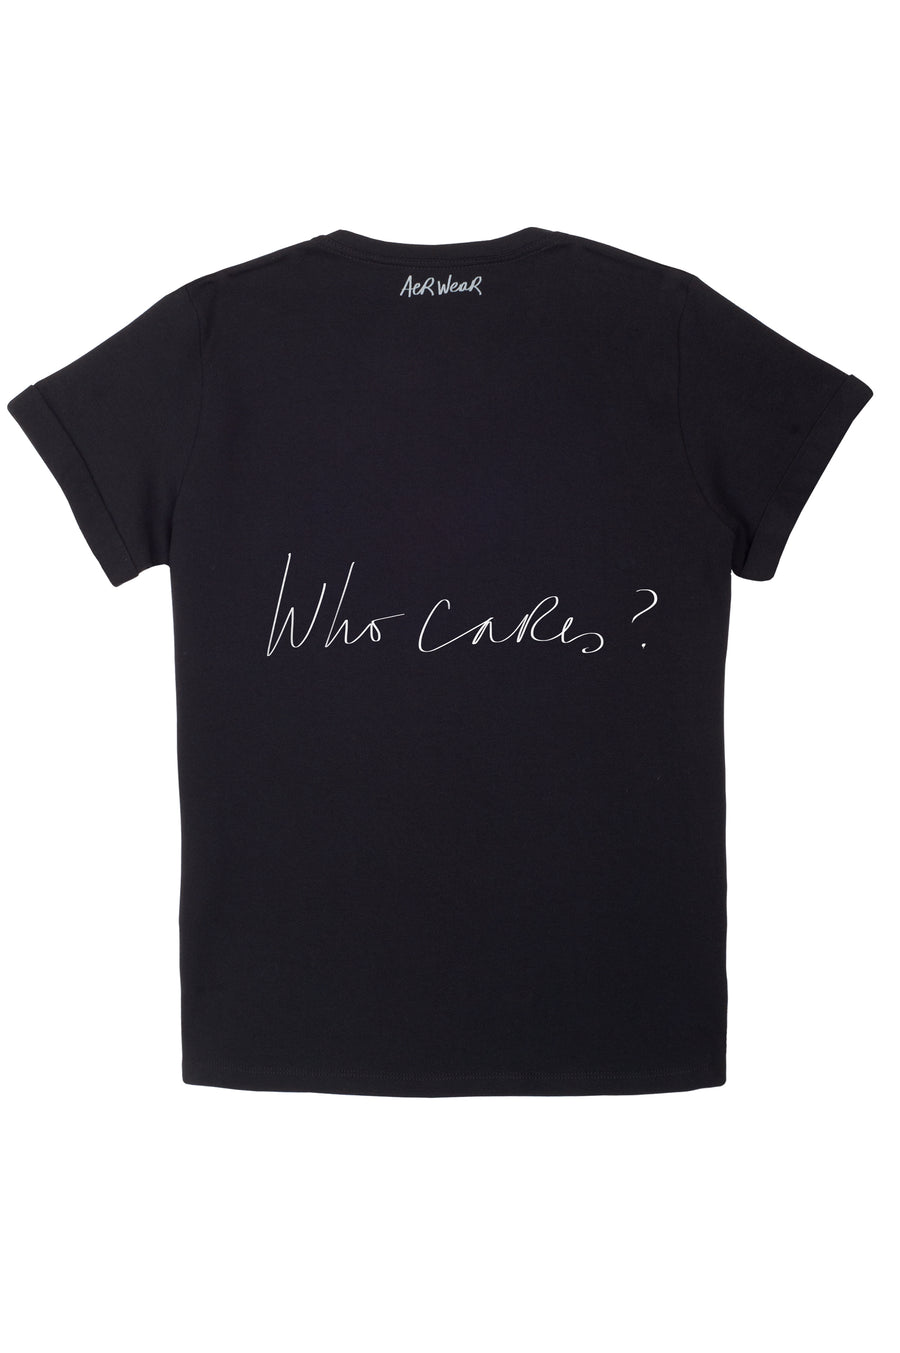 WHO CARES? Tshirt Black version